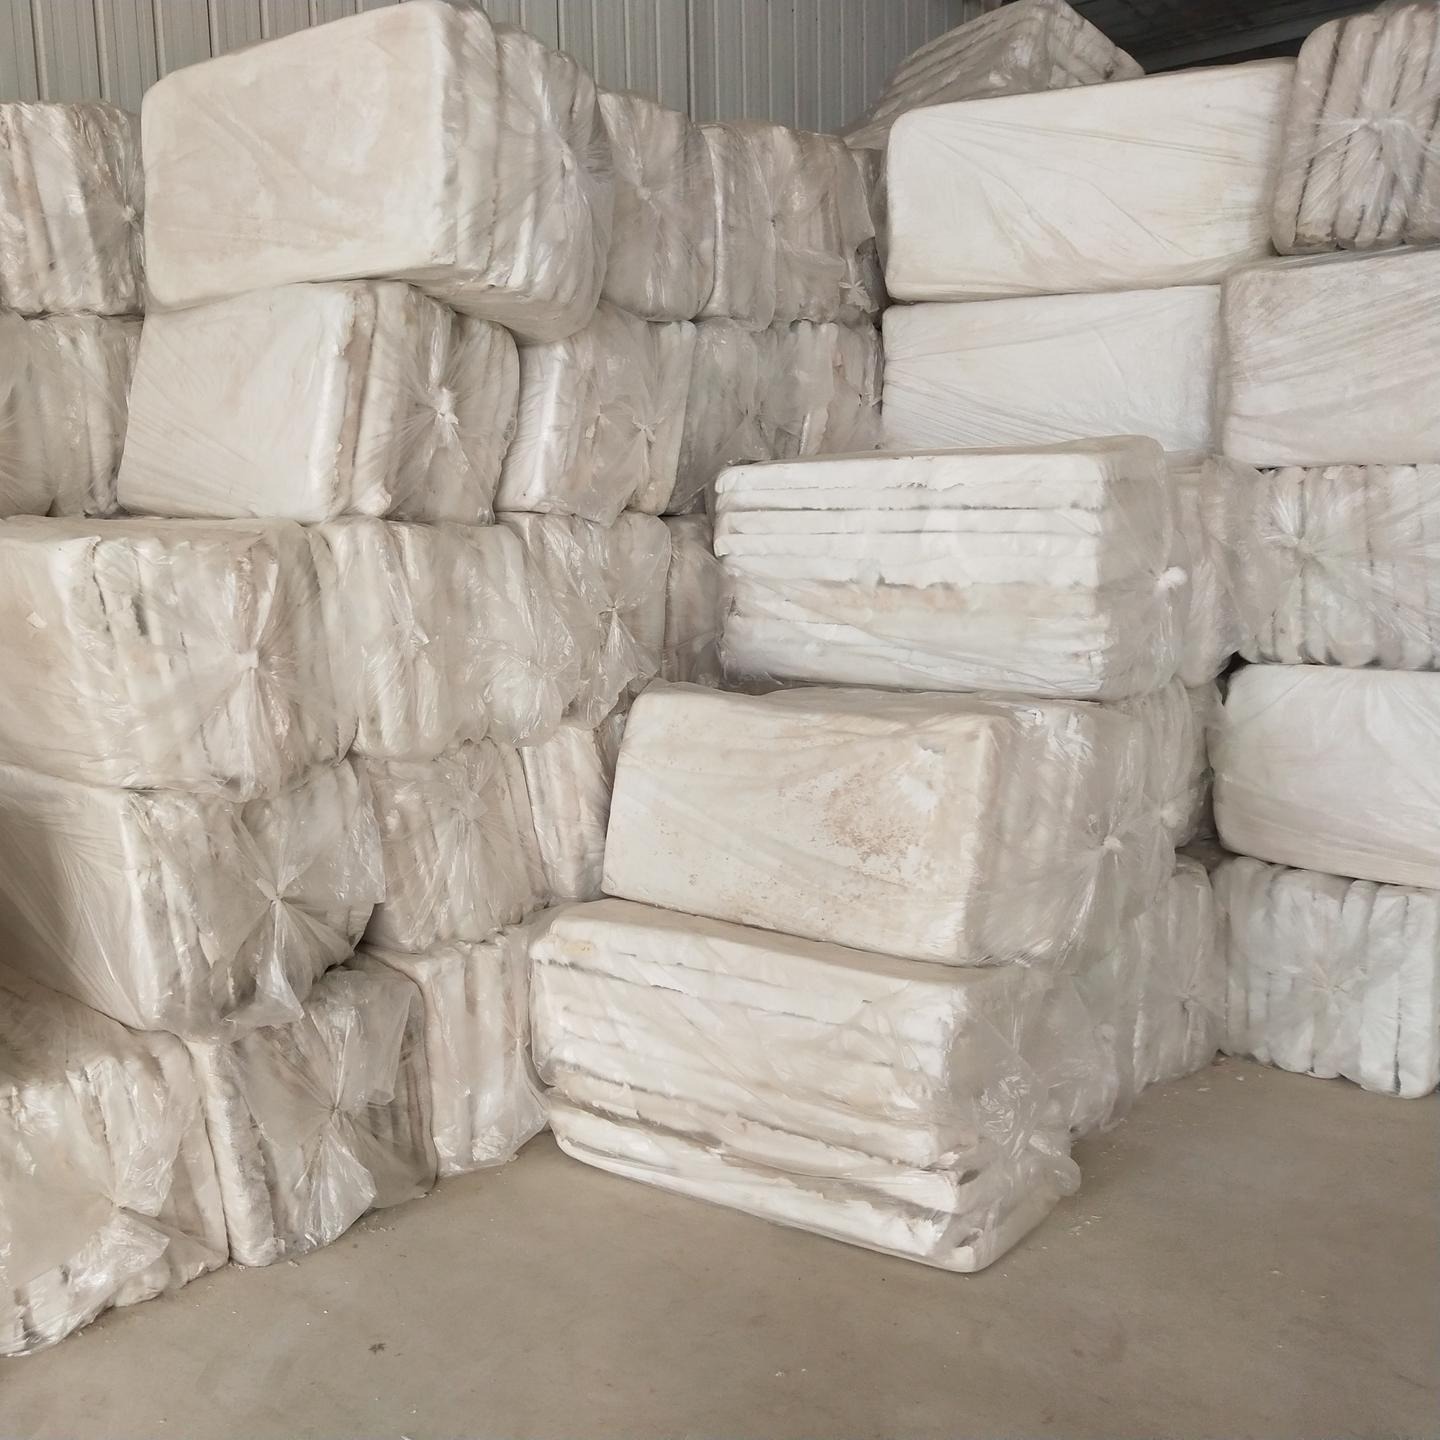 新疆乌鲁木齐硅酸盐板 硅酸盐管壳生产厂家 哈密硅酸盐板 克拉玛依硅酸盐板现货批发